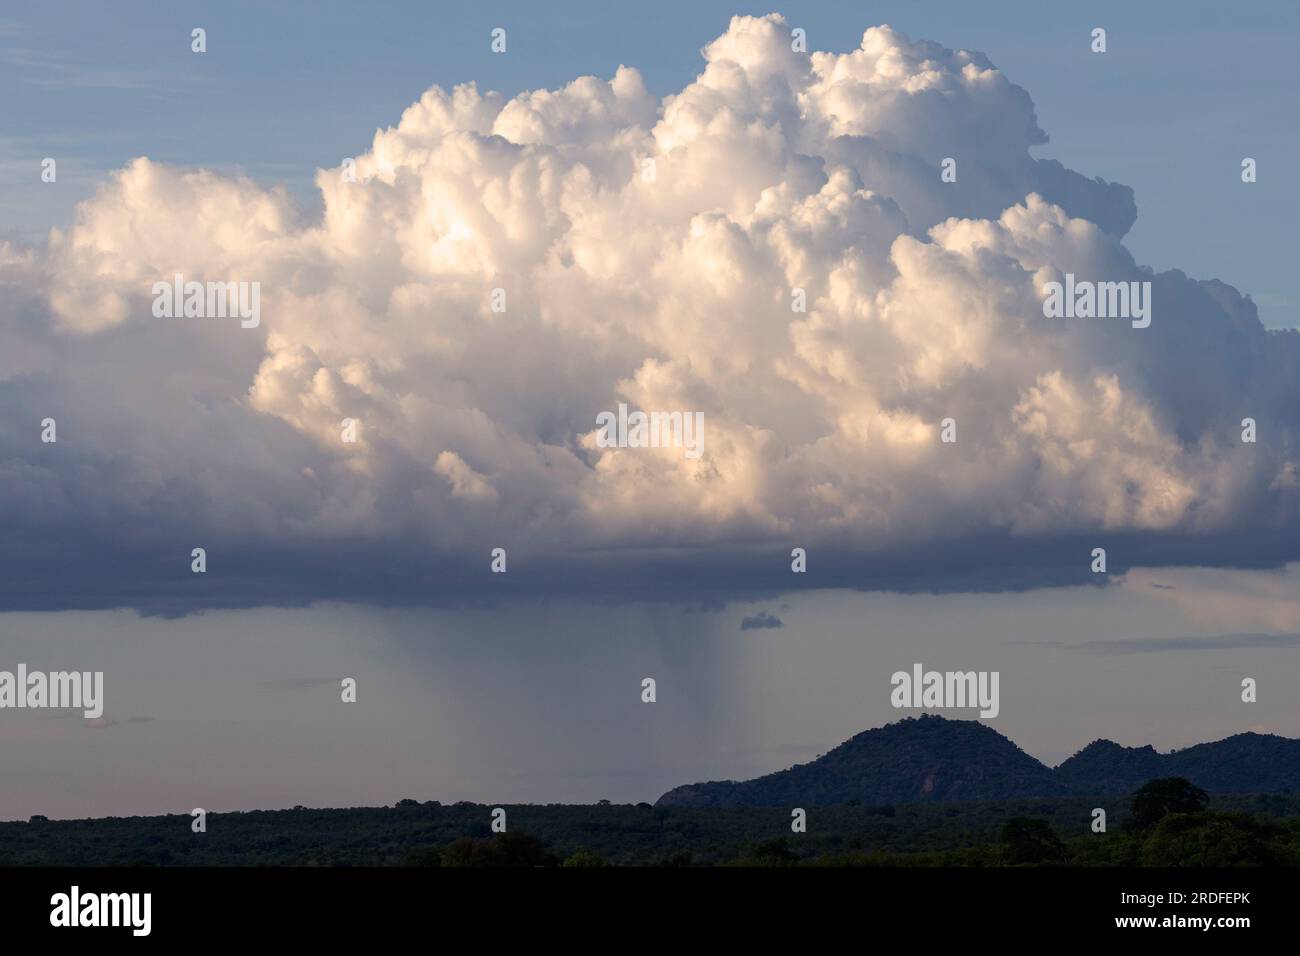 Une douche légère tombe d'un nuage de Cumulus lorsque le crépuscule empiète. Des nuages comme celui-ci peuvent se développer davantage pour devenir des Cumulonimbus imposants. Banque D'Images